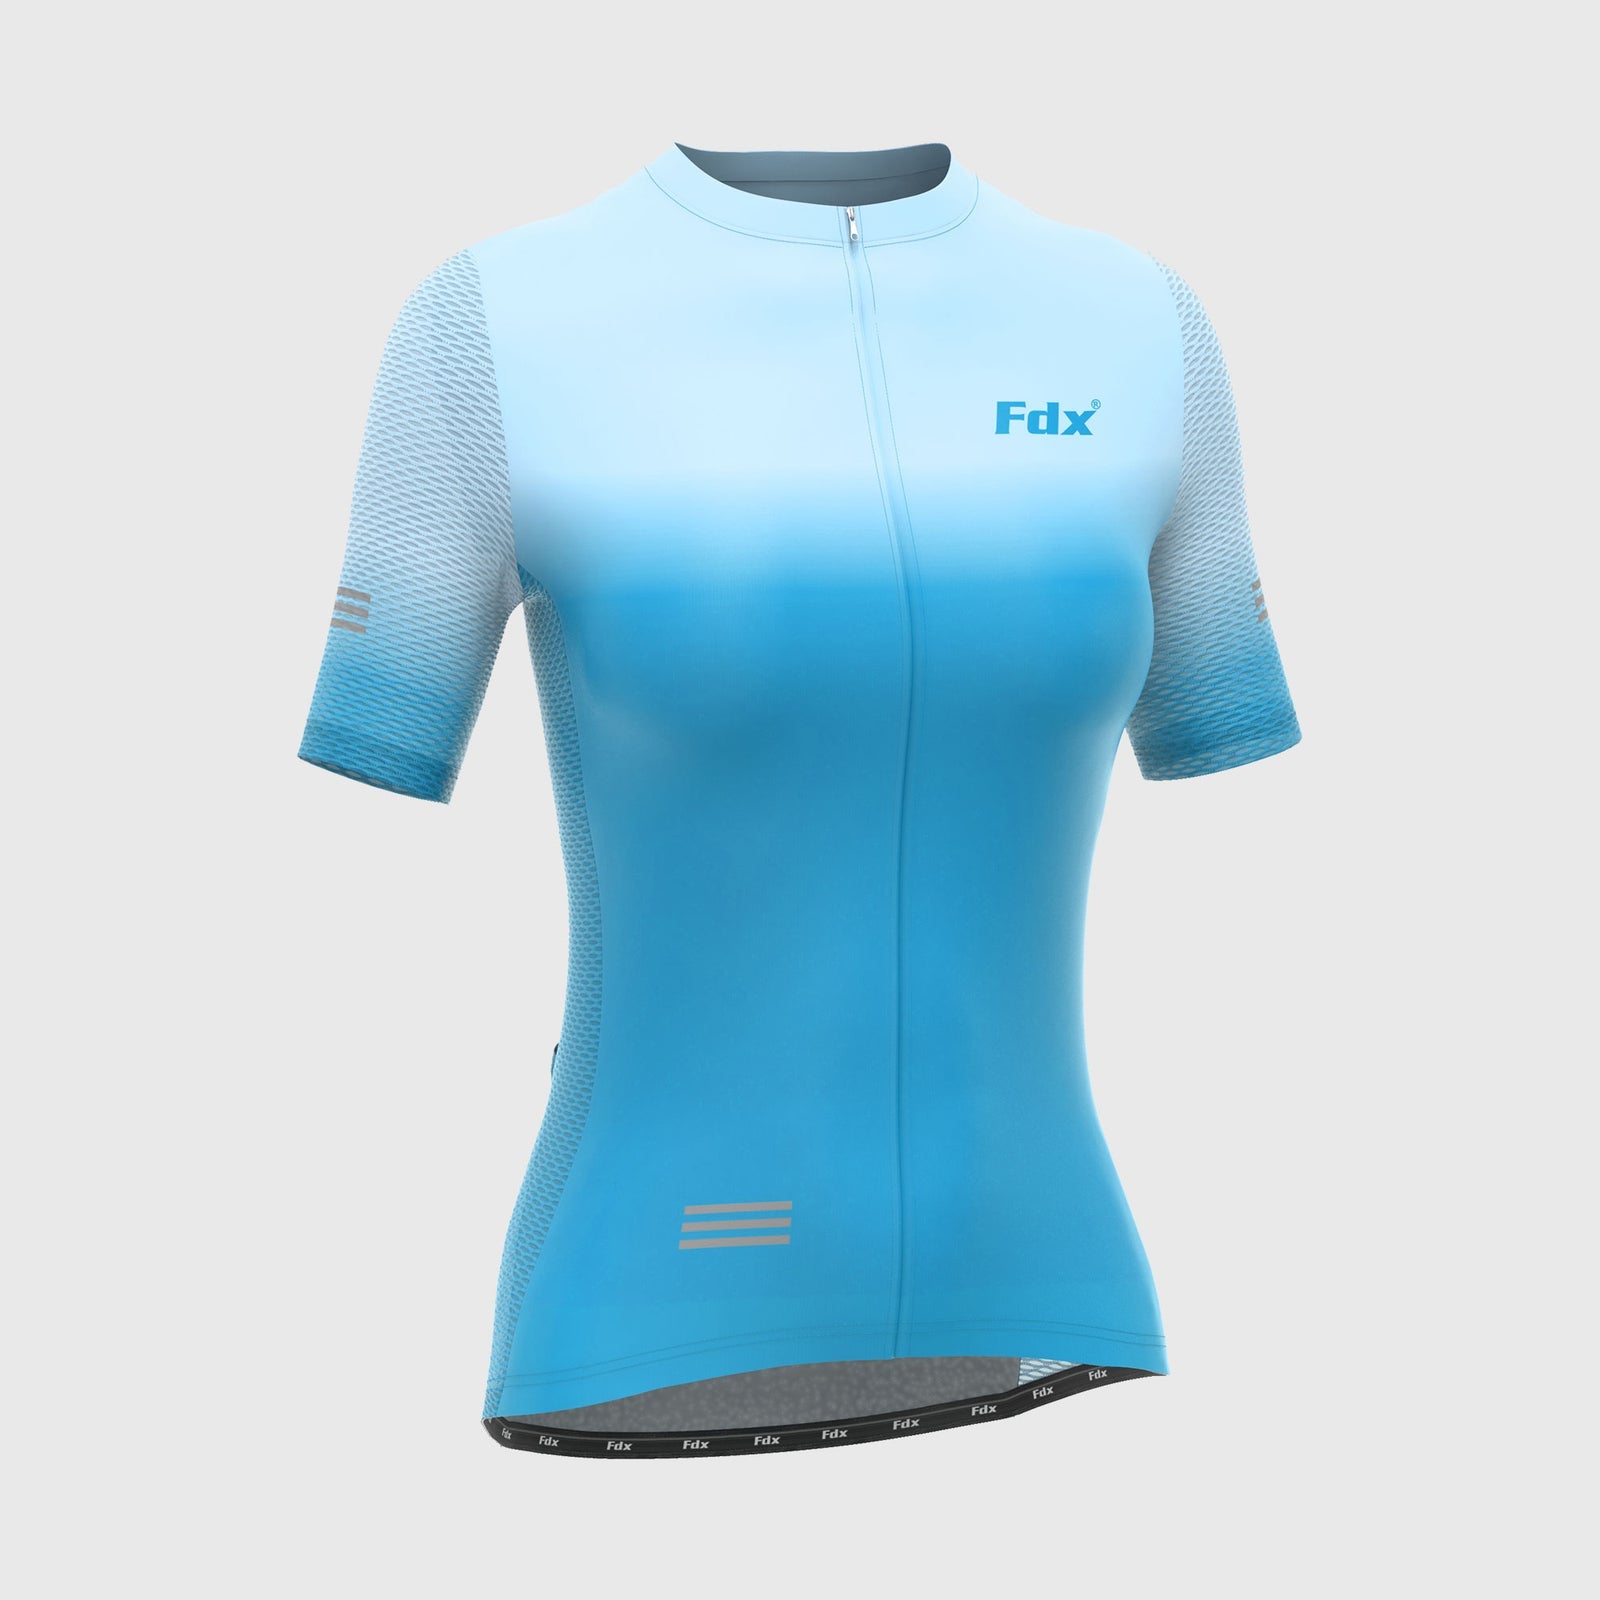 Fdx Womens Blue Short Sleeve Cycling Jersey for Summer Best Road Bike Wear Top Light Weight, Full Zipper, Pockets & Hi-viz Reflectors - Duo